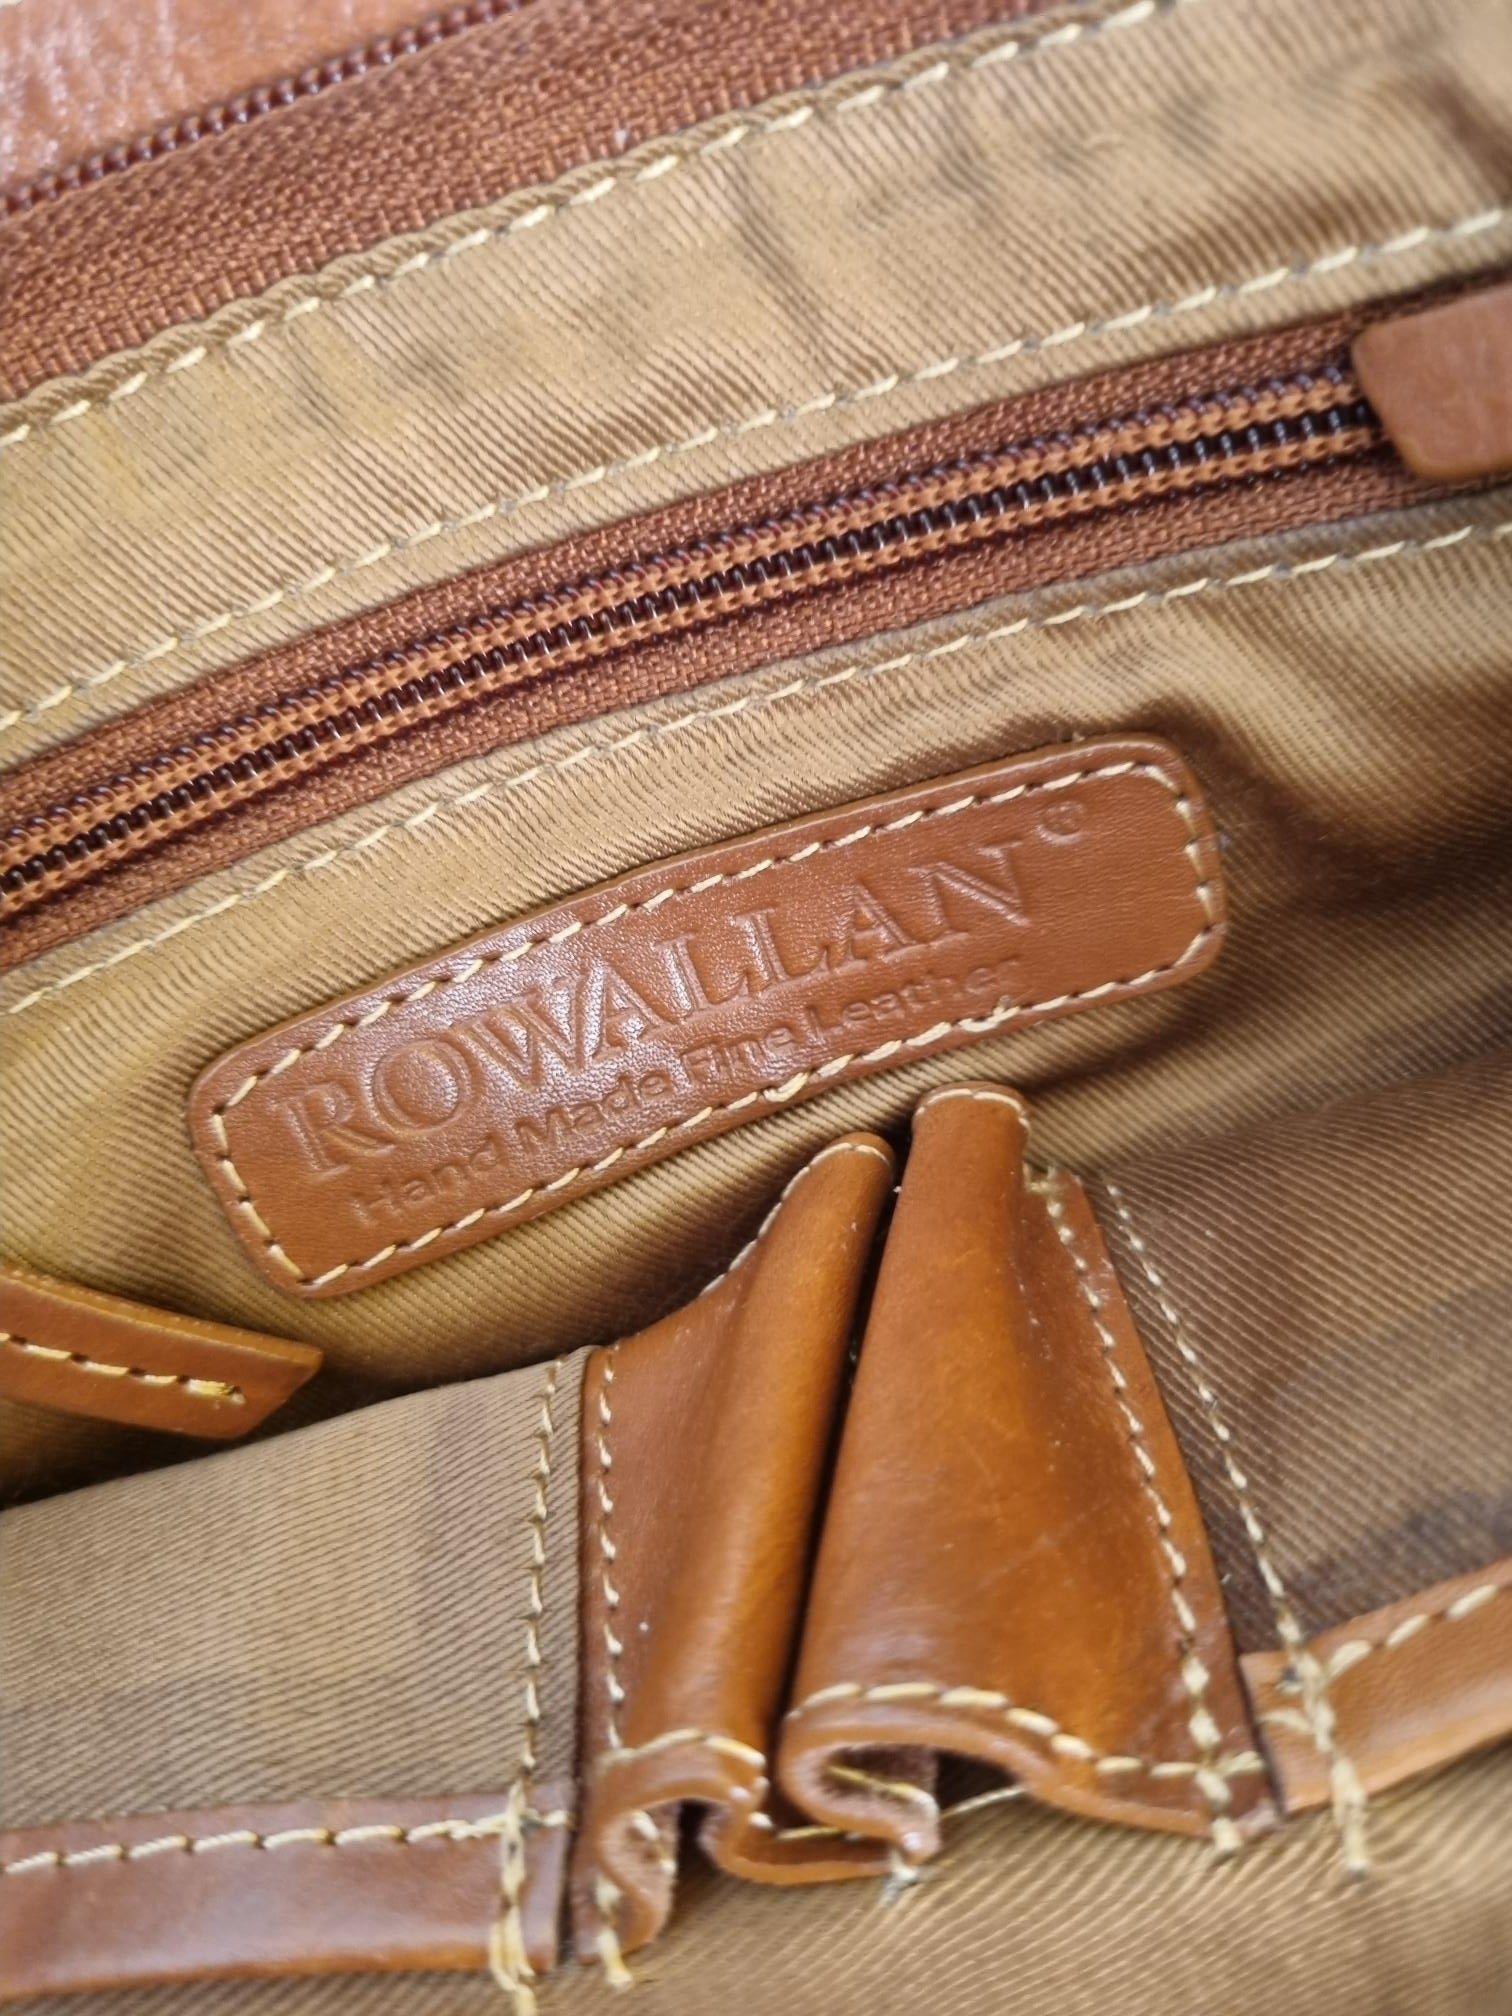 rowallan leather bag / satchel - Đức An Phát